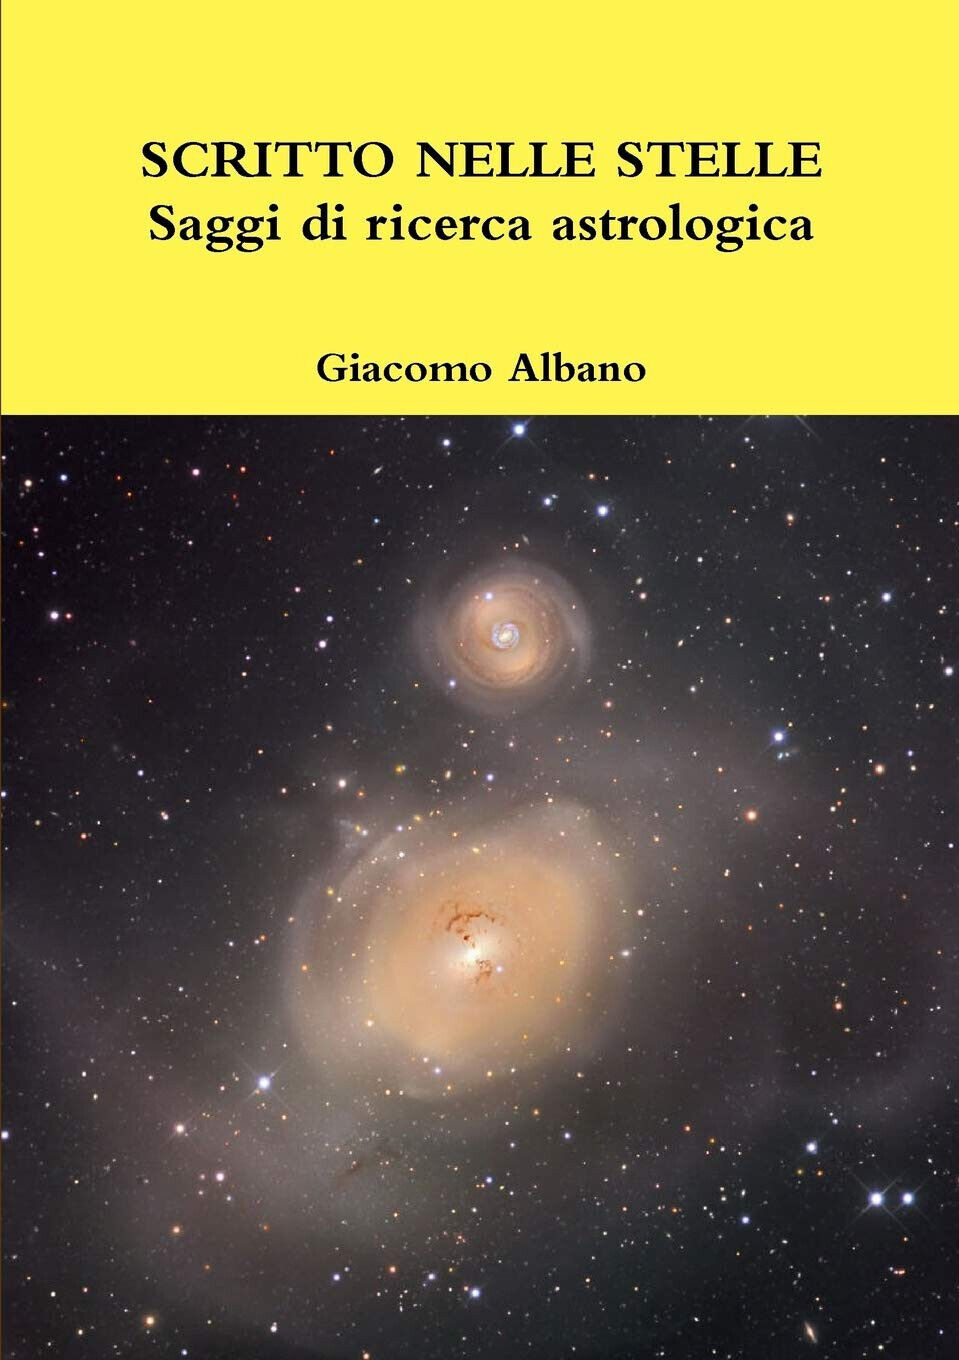 SCRITTO NELLE STELLE Saggi di ricerca astrologica - Giacomo Albano - 2019